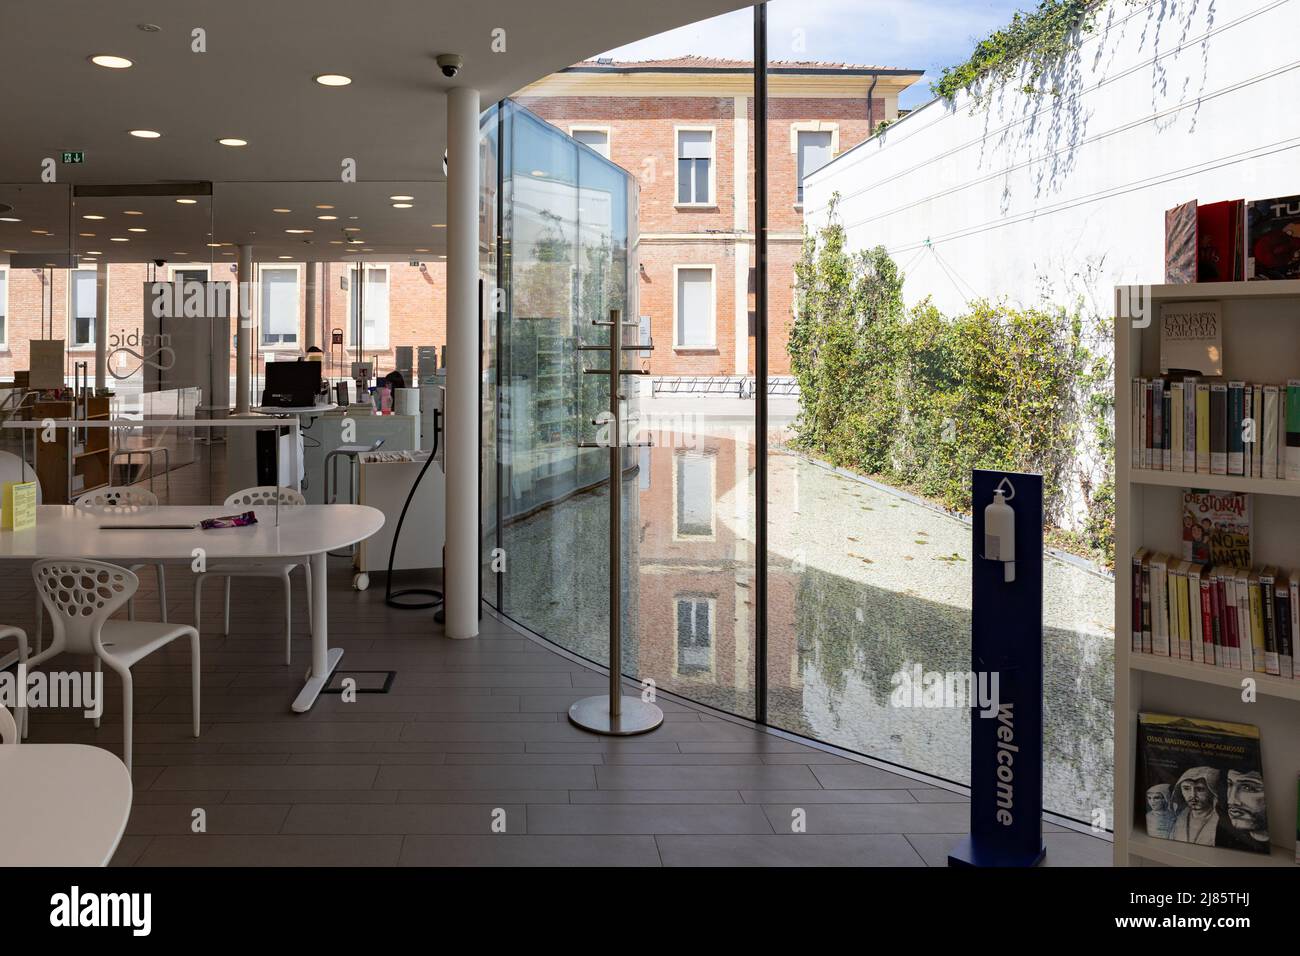 Stadtbibliothek Maranello, entworfen von Pritzker, ausgezeichnet mit dem japanischen Architekten Isozaki Arata und dem italienischen Co-Designer Andrea Maffei. Fertig Gestellt 2012. Stockfoto